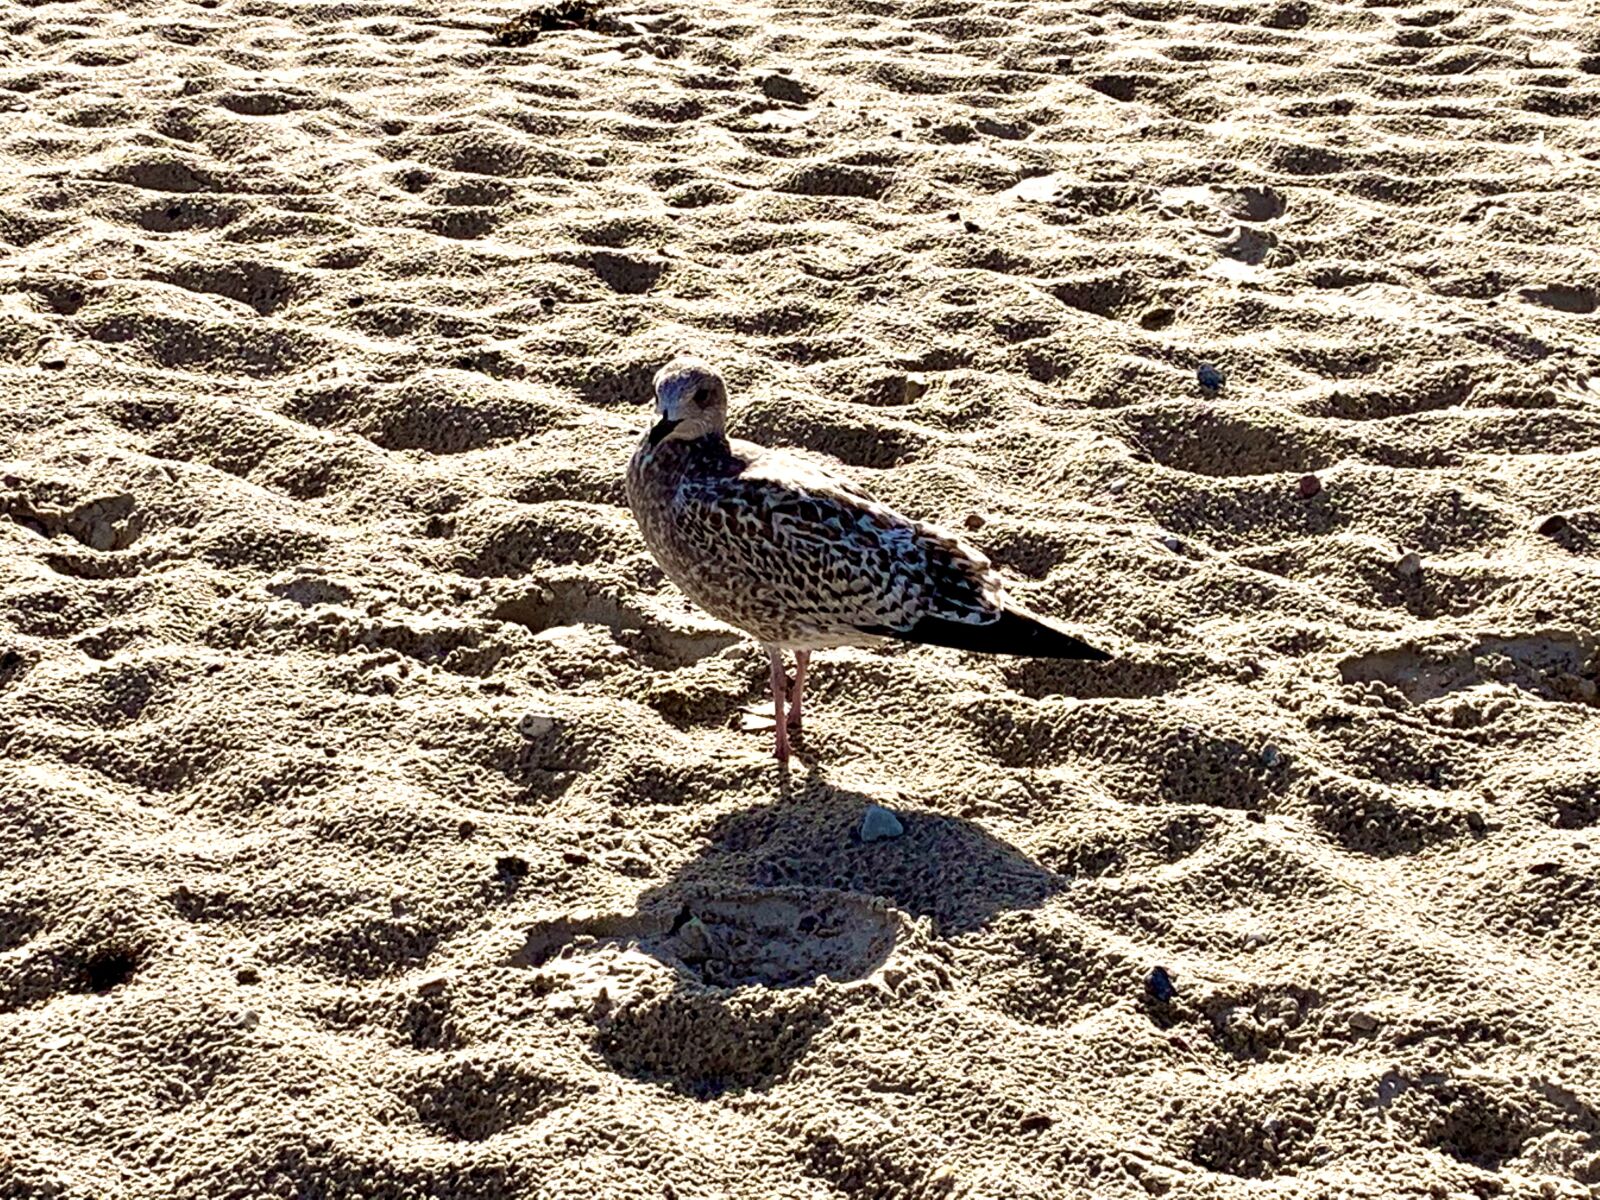 Apple iPhone XR sample photo. Beach, seagull, bird photography